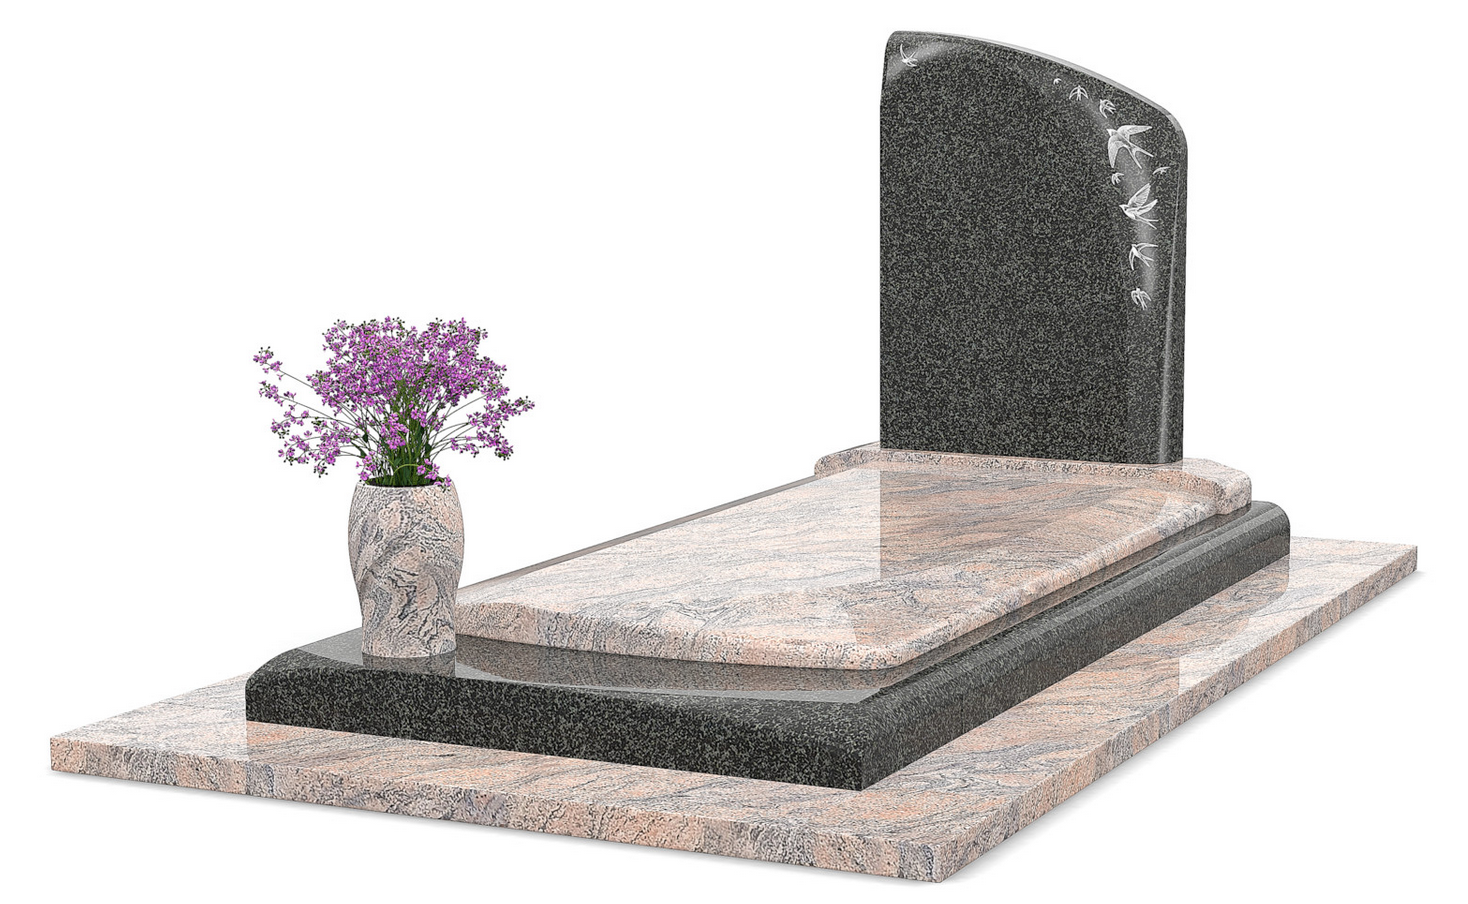 Choix d' une pierre tombale selon la personnalité du défunt